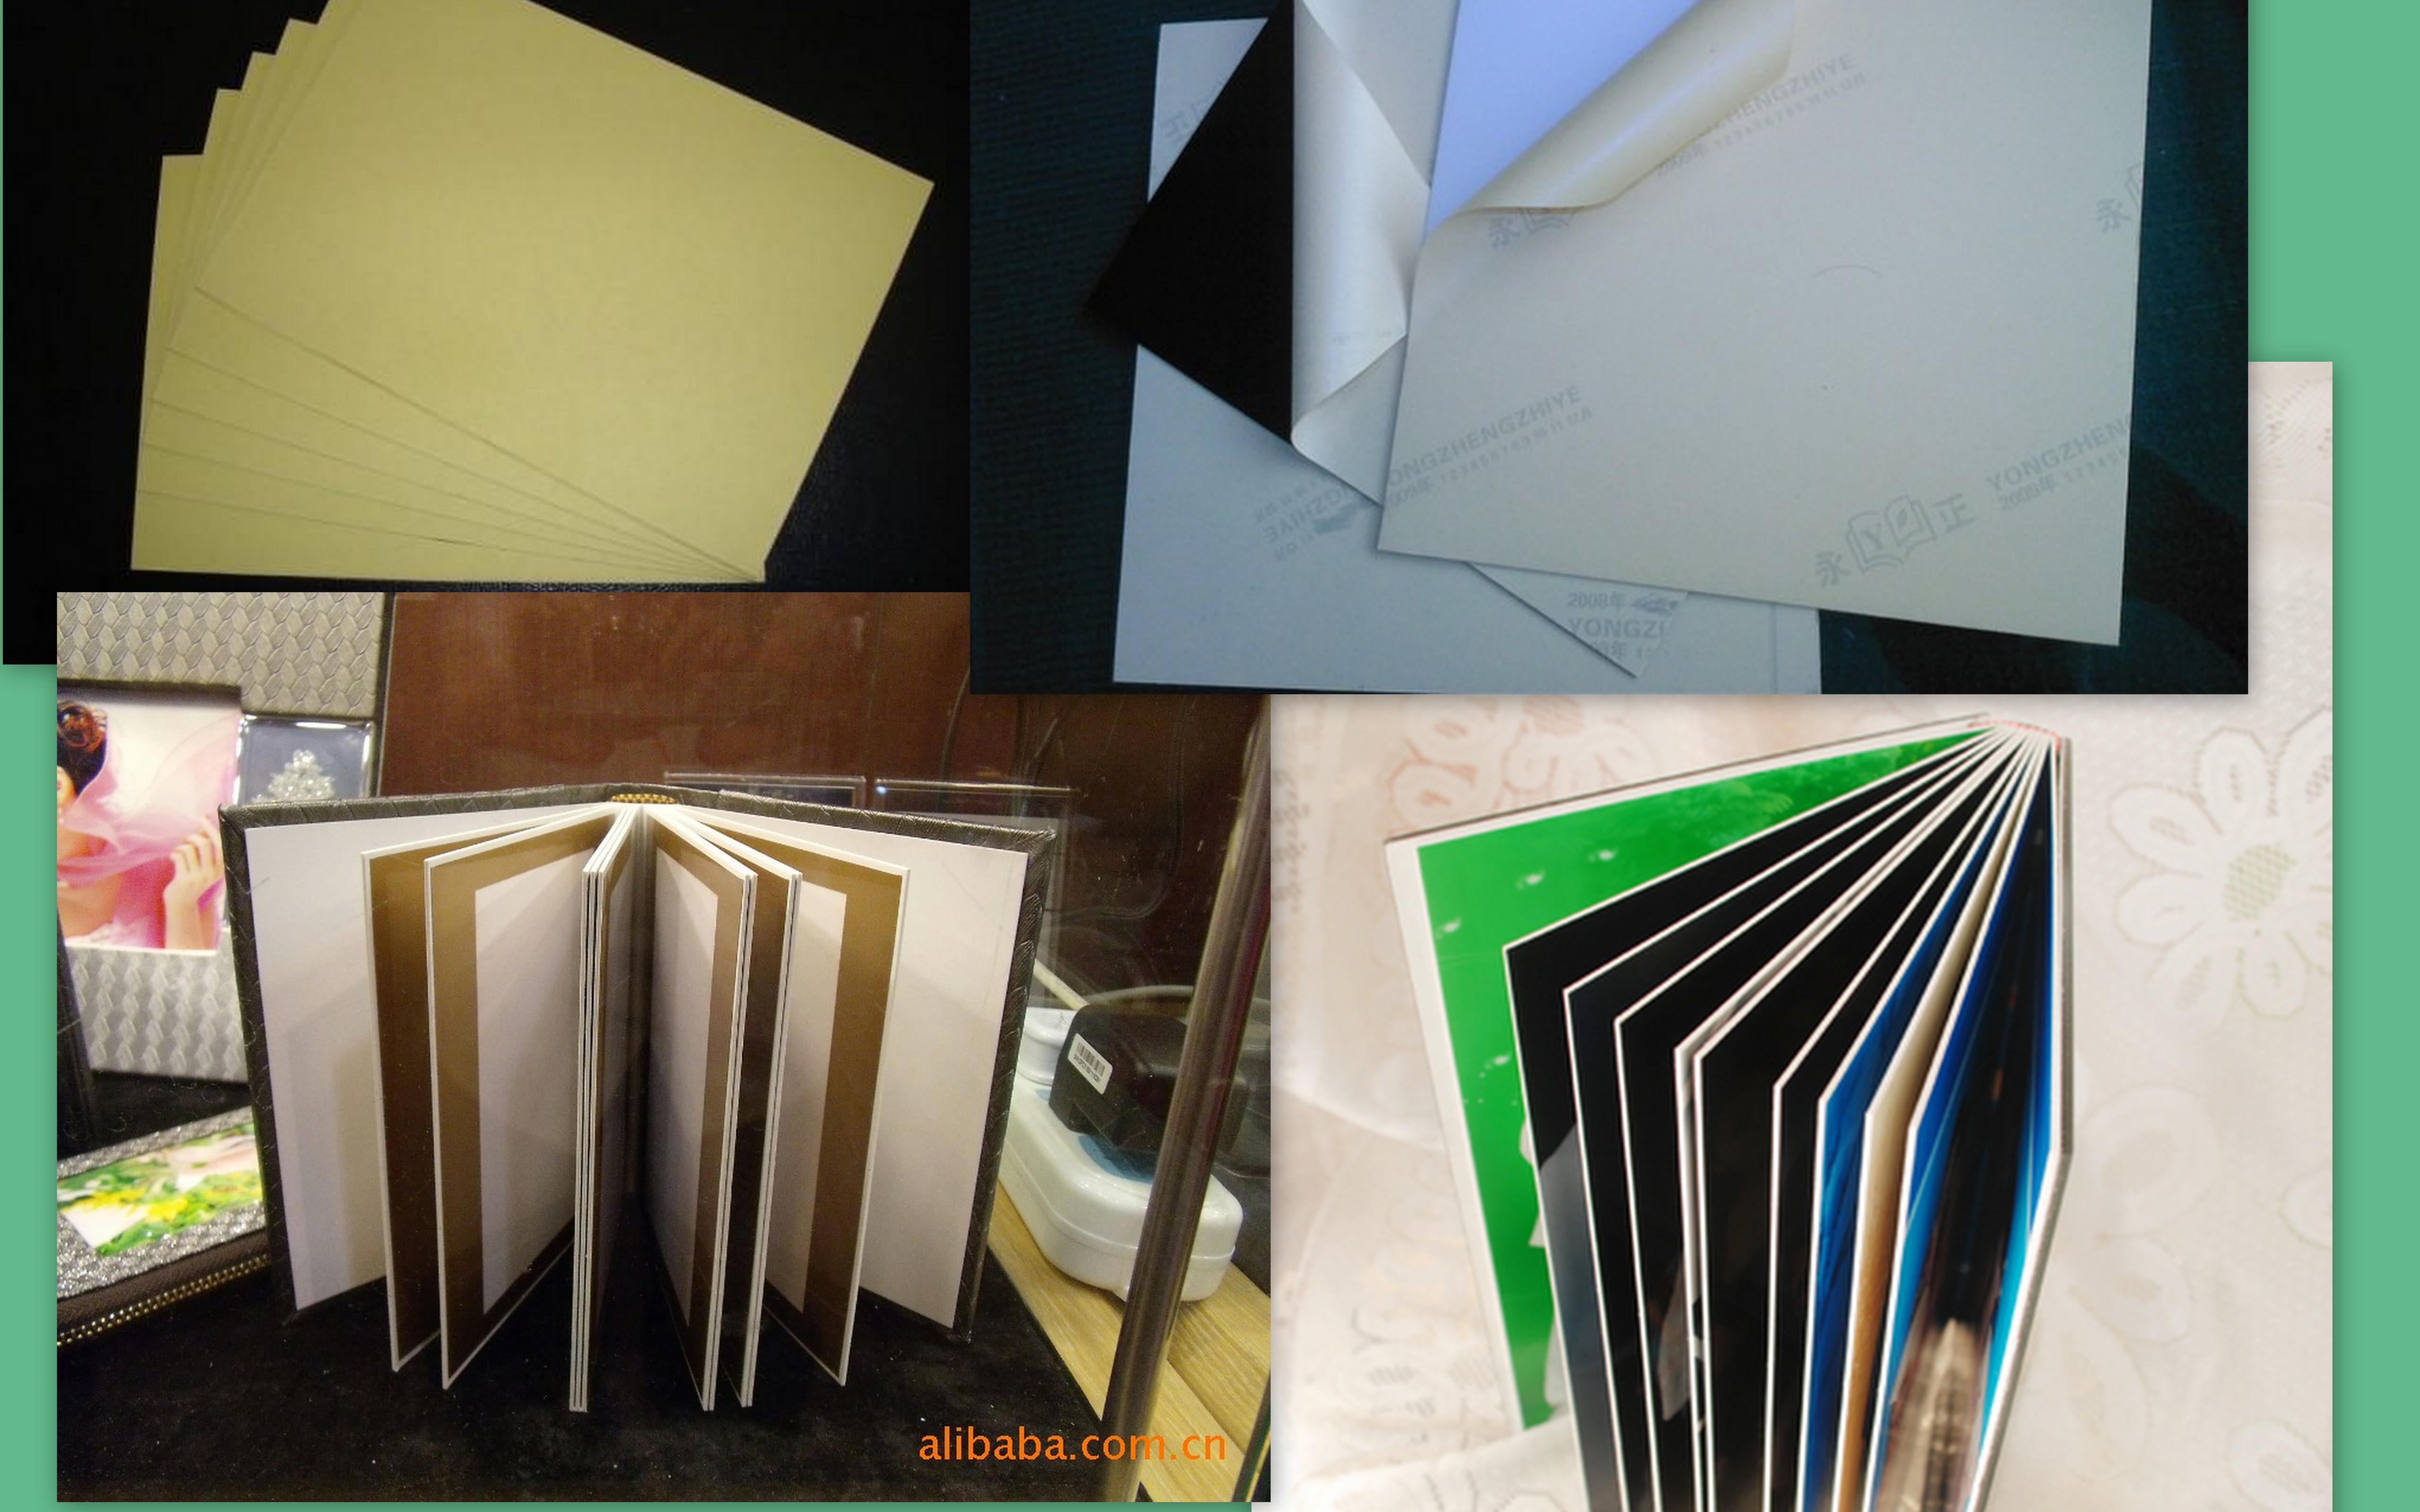 Album inner sheet/Foam PVC Sheet/Hard rigid self-adhesive PVC/High quality PVC album sheet /PVC album sheet/album consumable PVC 